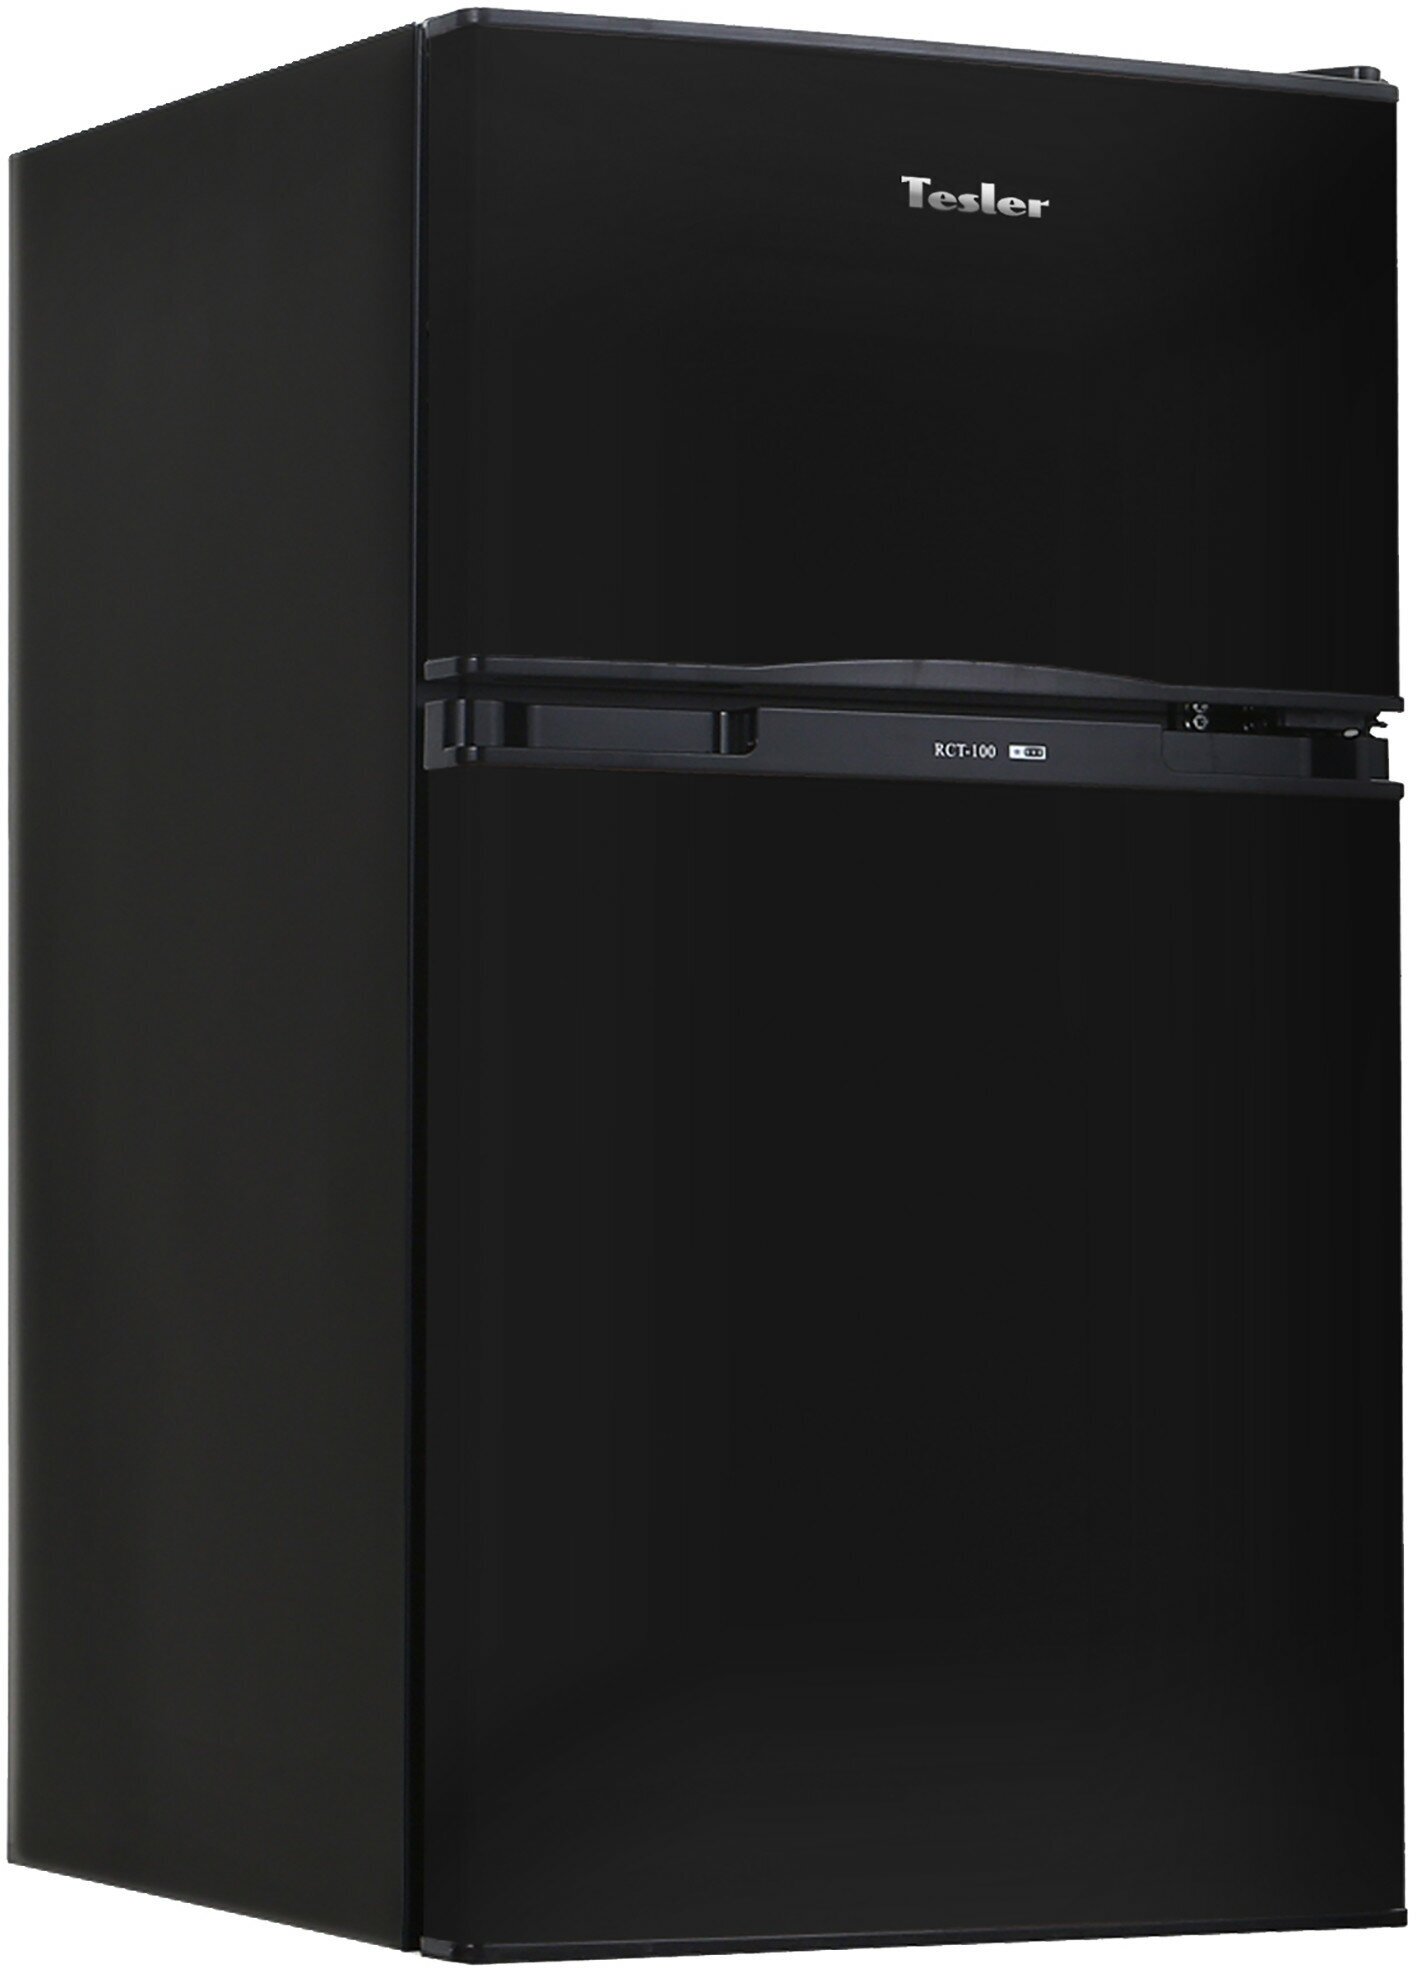 Холодильник Tesler RCT-100 Black — купить в интернет-магазине по низкой цене на Яндекс Маркете